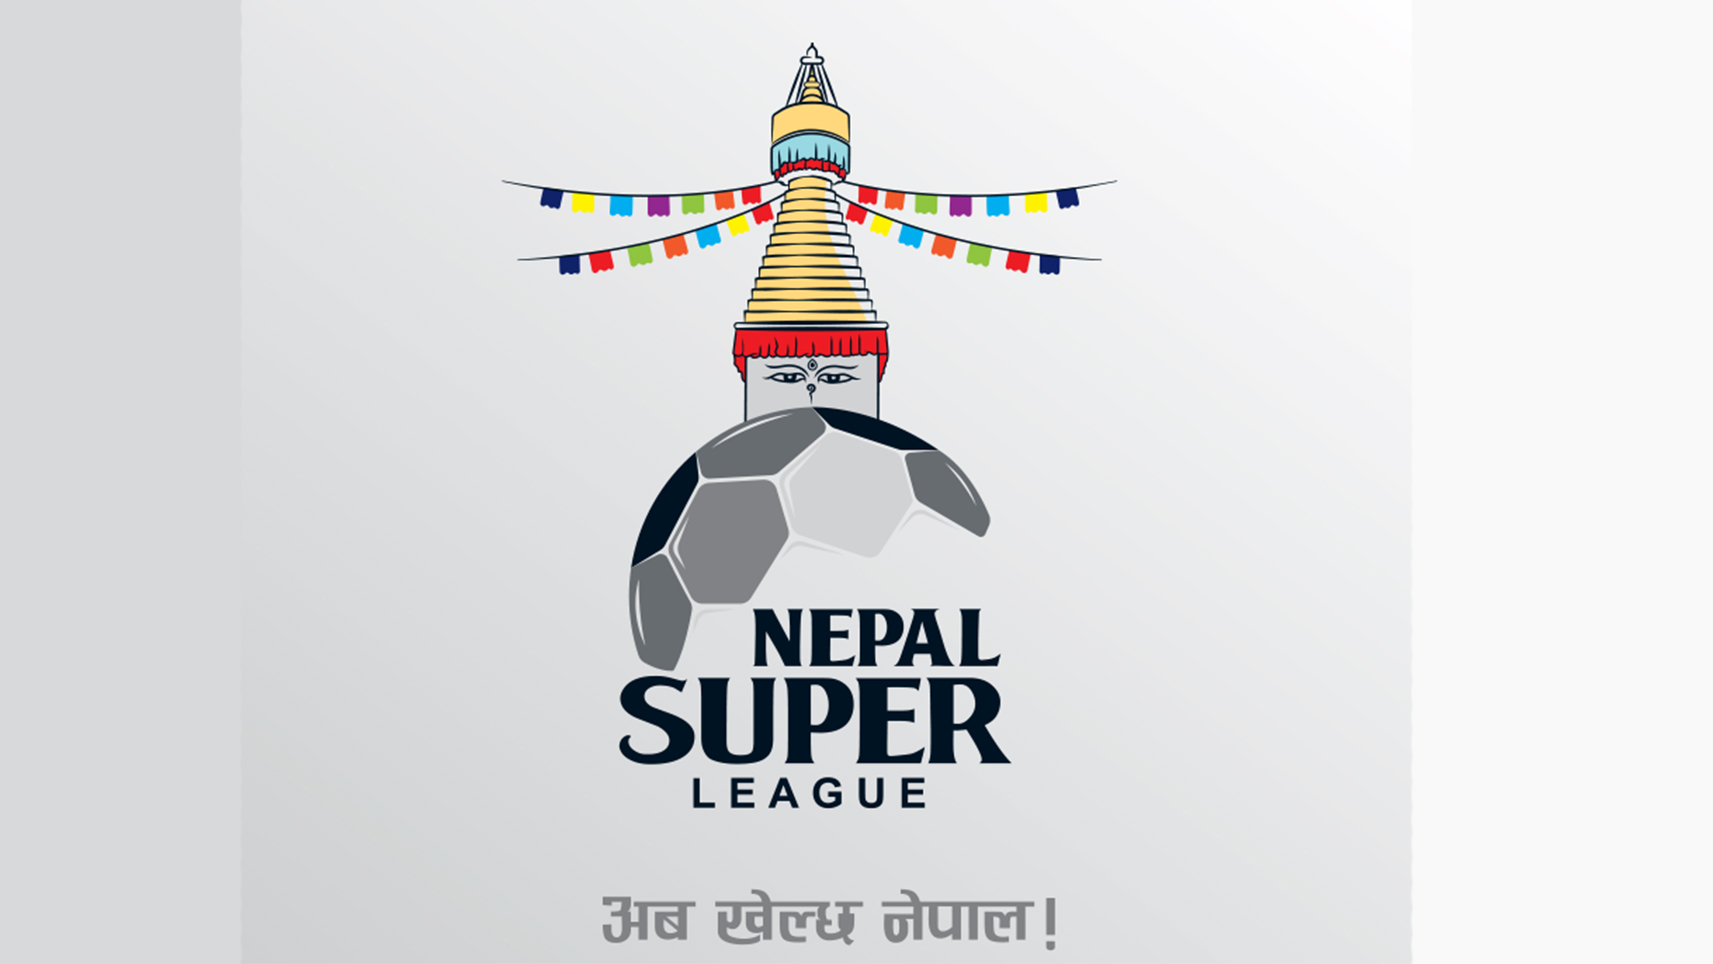 नेपाल सुपर लिगमा उपाधिको लागि काठमाण्डौ रेजर्स र धनगढी एफसी खेल्दै